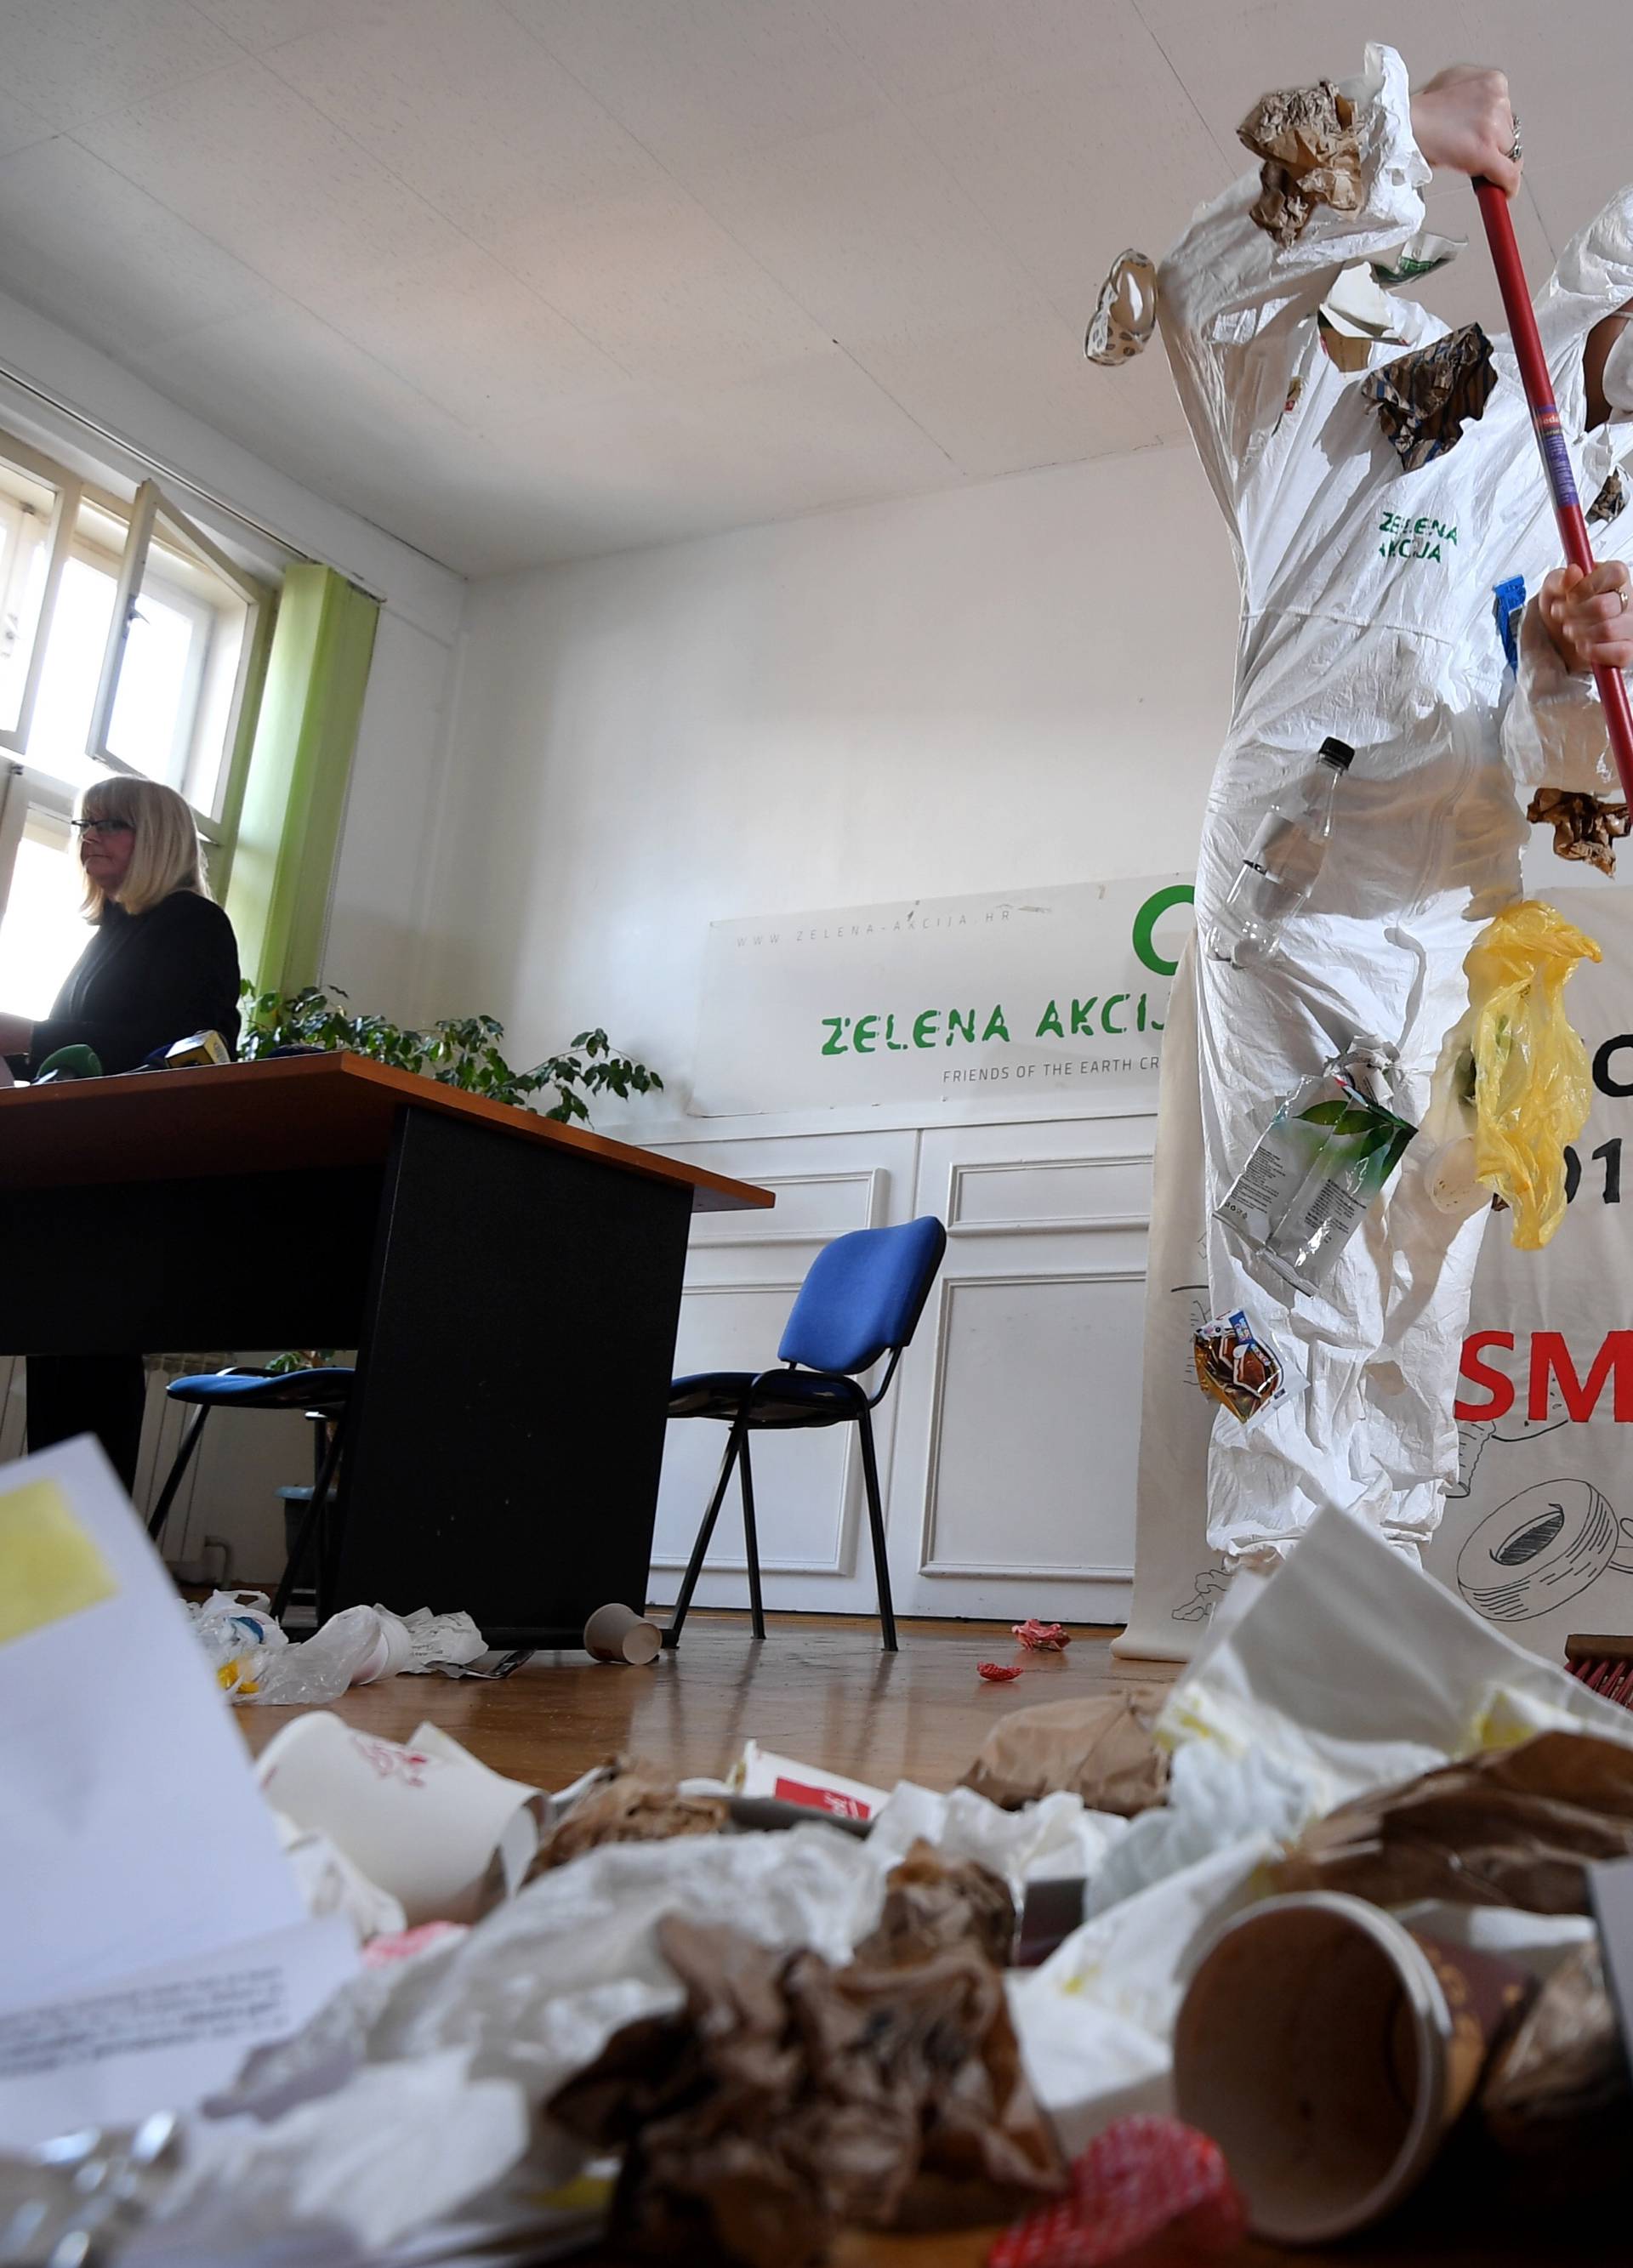 Ide smećava: ‘Otpad u Zagrebu mora biti sirovina, a ne smeće’